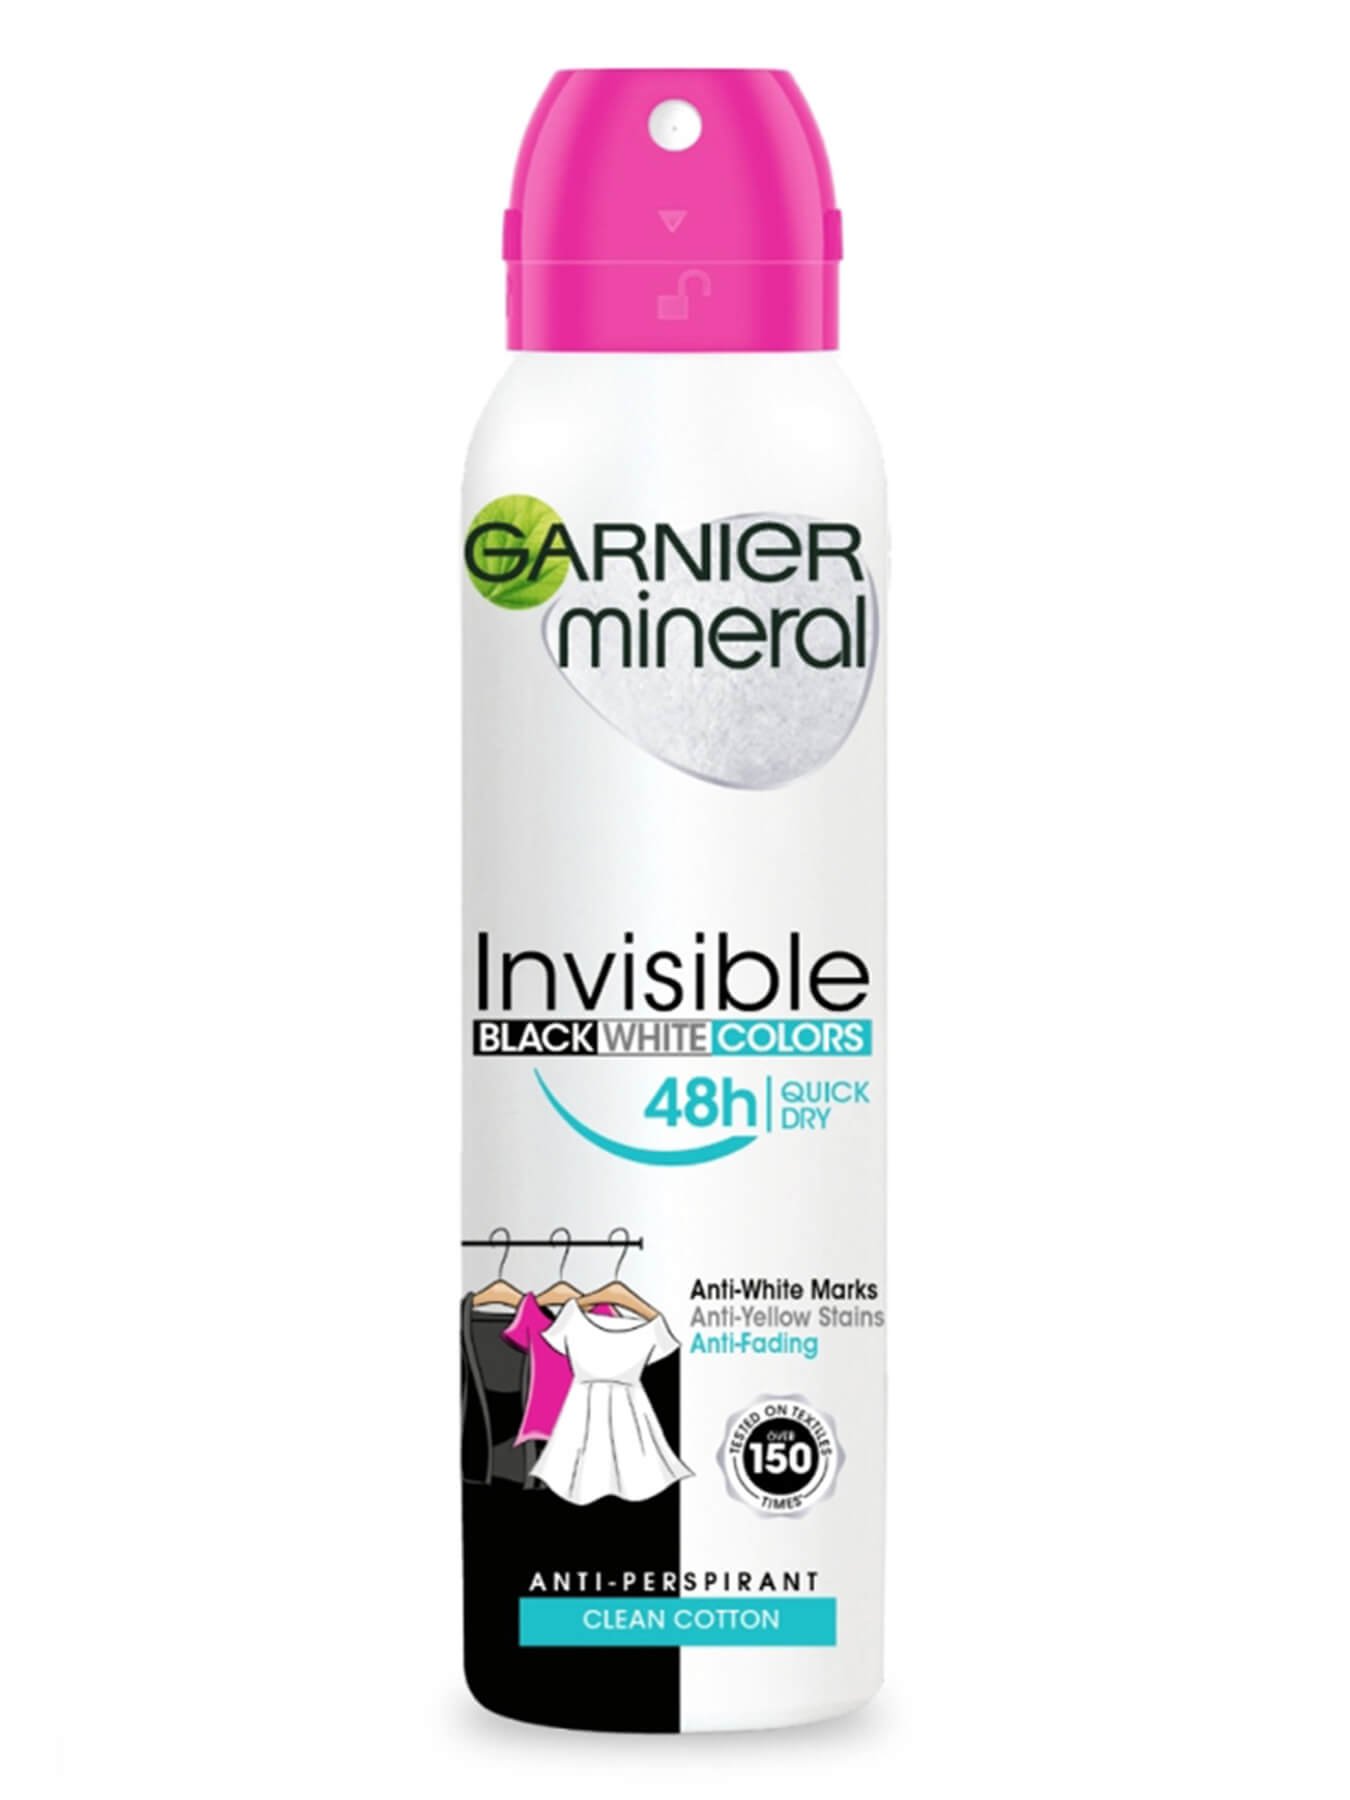 Garnier Mineral Invisible Black, White & Colors Cotton dezodorans u spreju